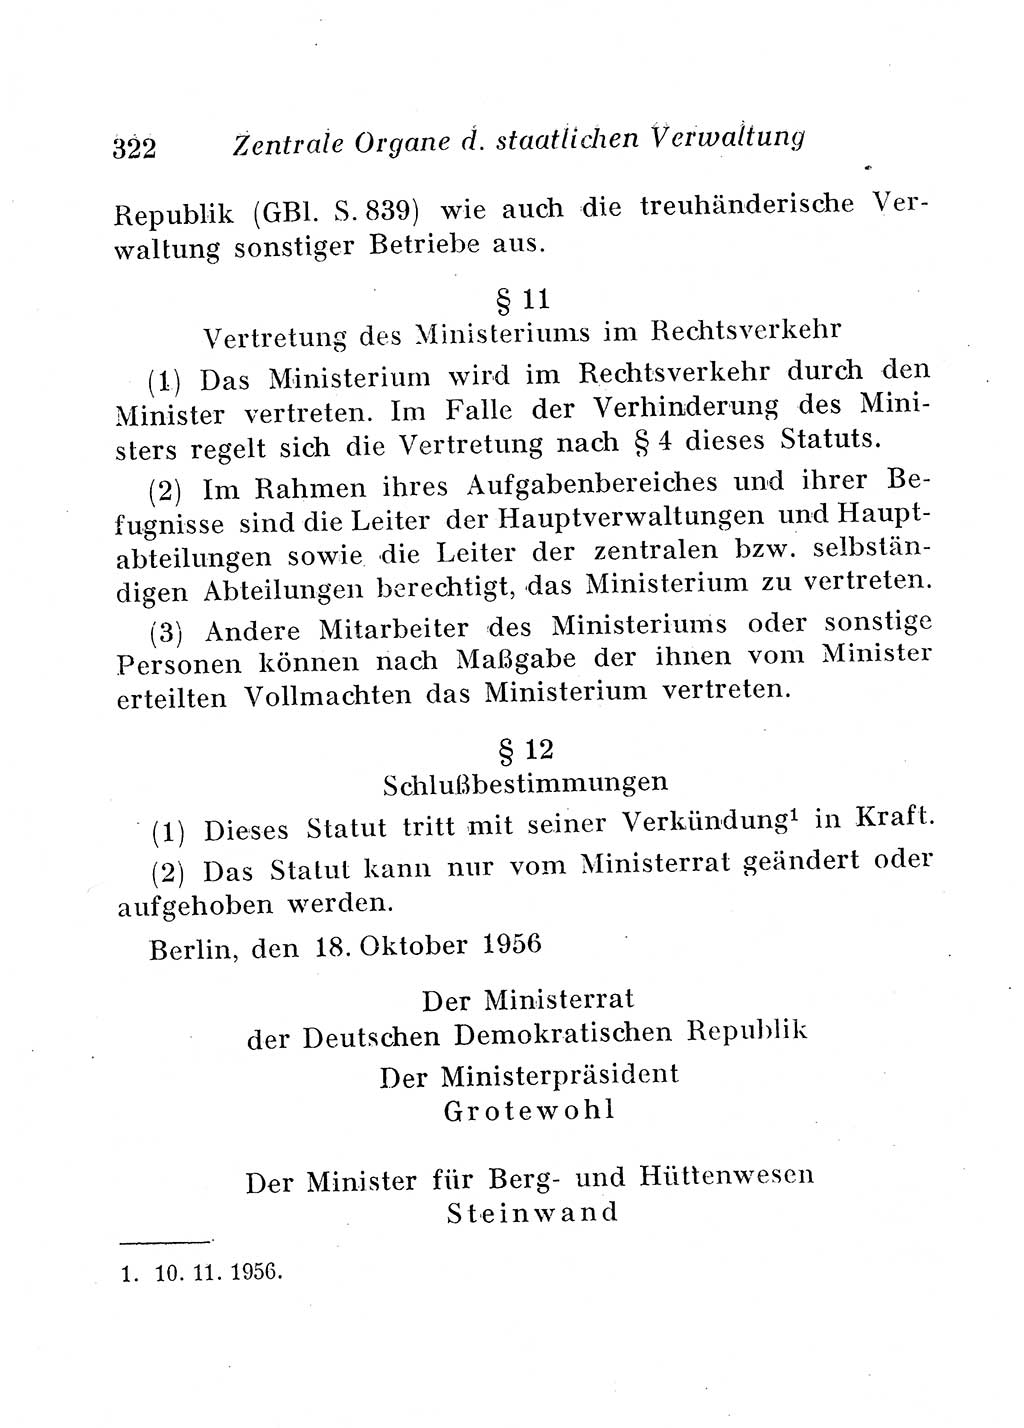 Staats- und verwaltungsrechtliche Gesetze der Deutschen Demokratischen Republik (DDR) 1958, Seite 322 (StVerwR Ges. DDR 1958, S. 322)